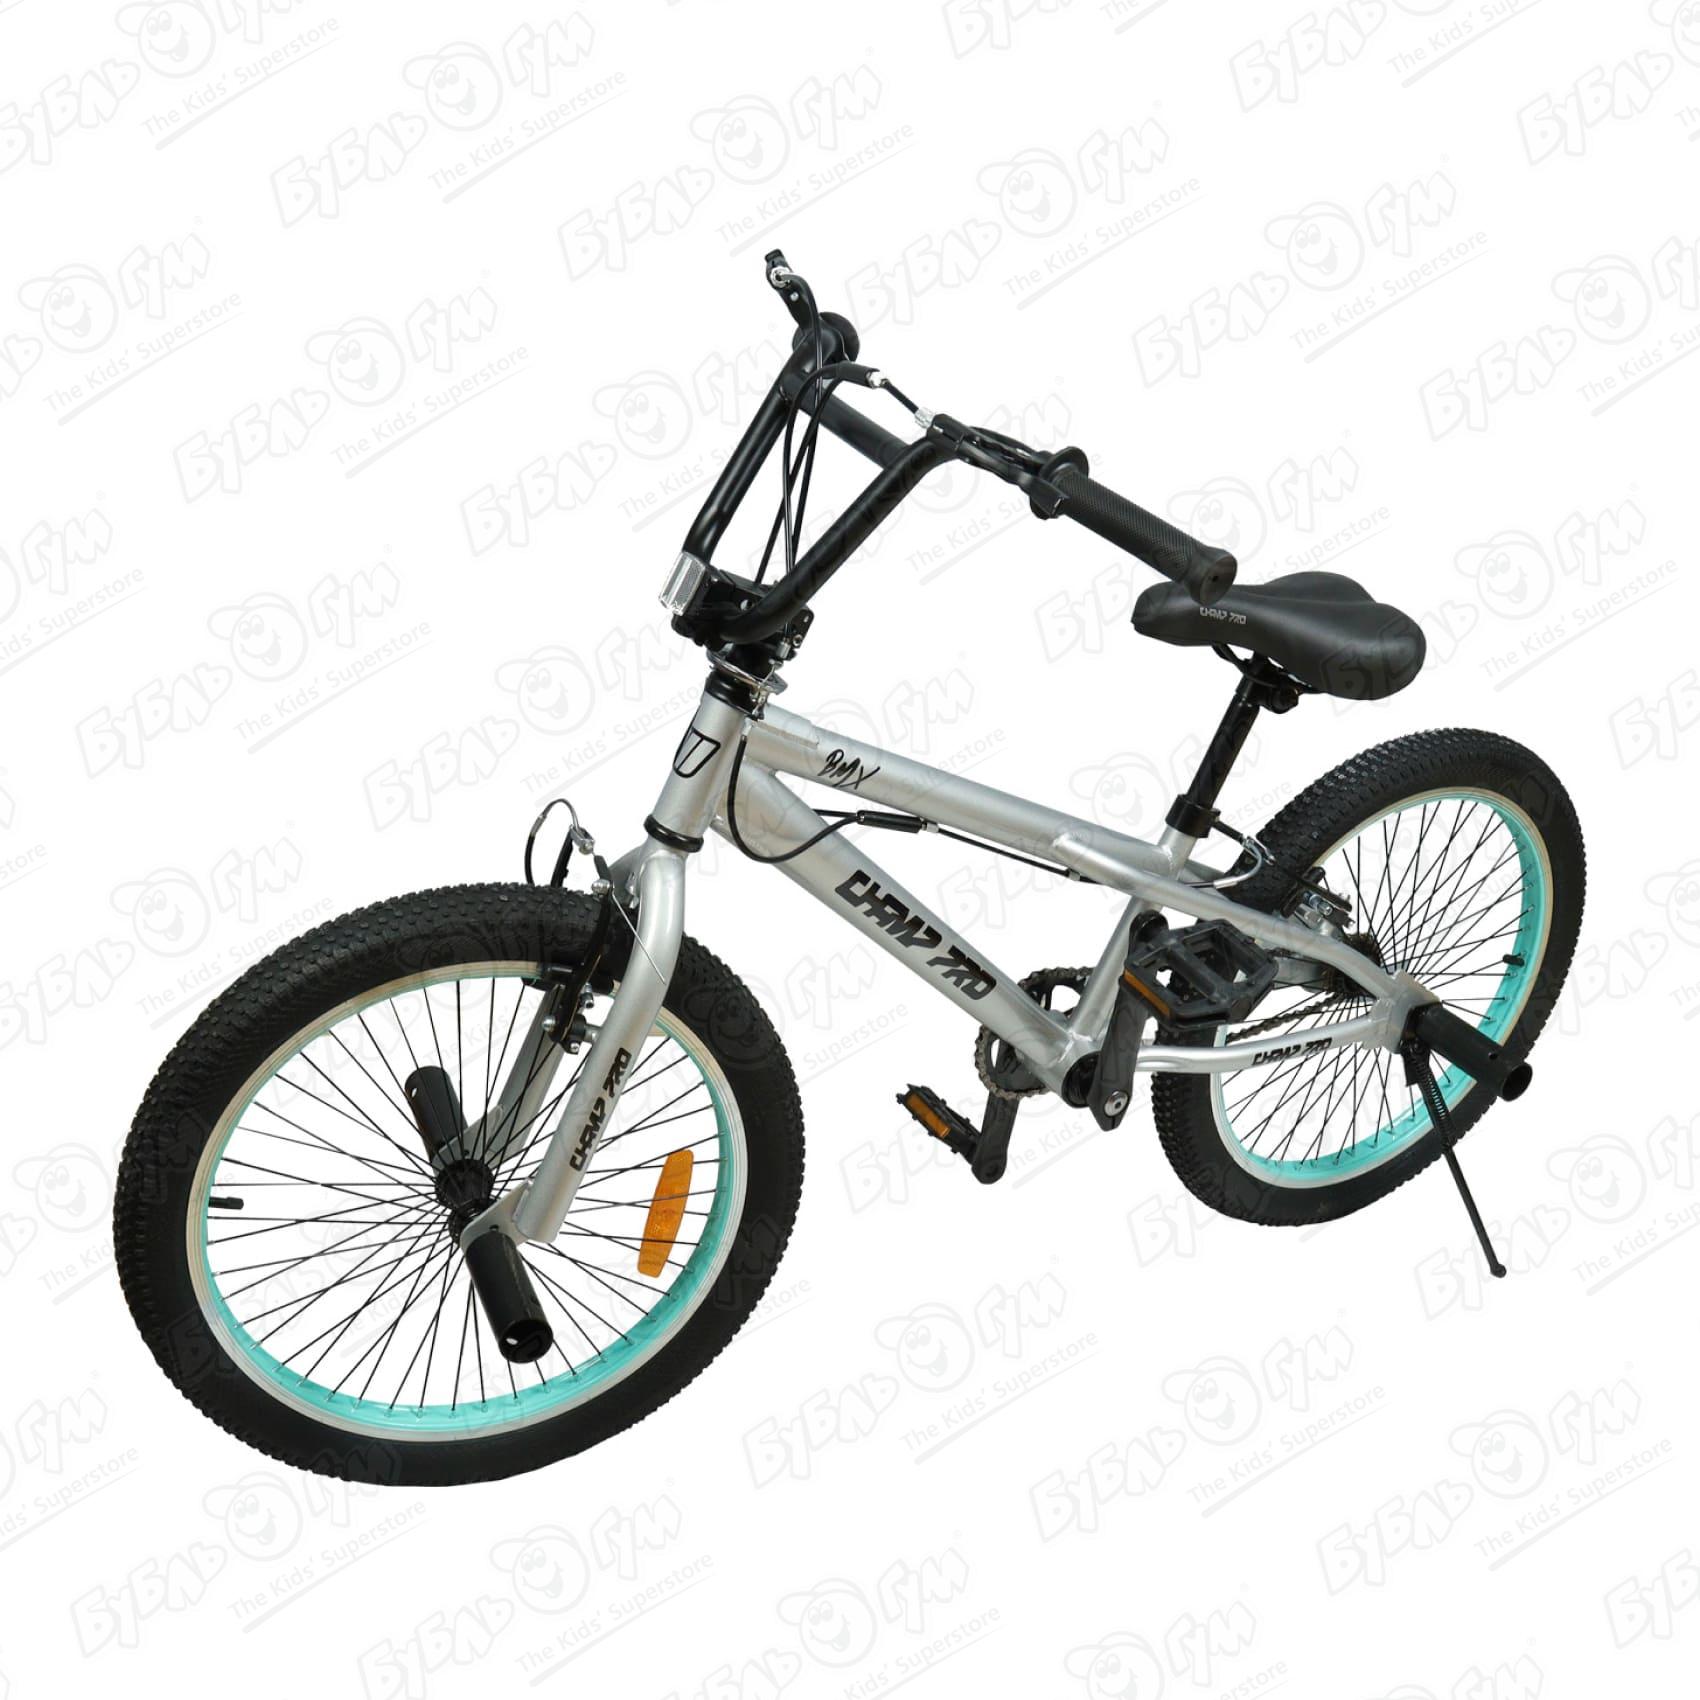 Велосипед Champ Pro BMX B20 с гироротором серебряный, цвет серебристый